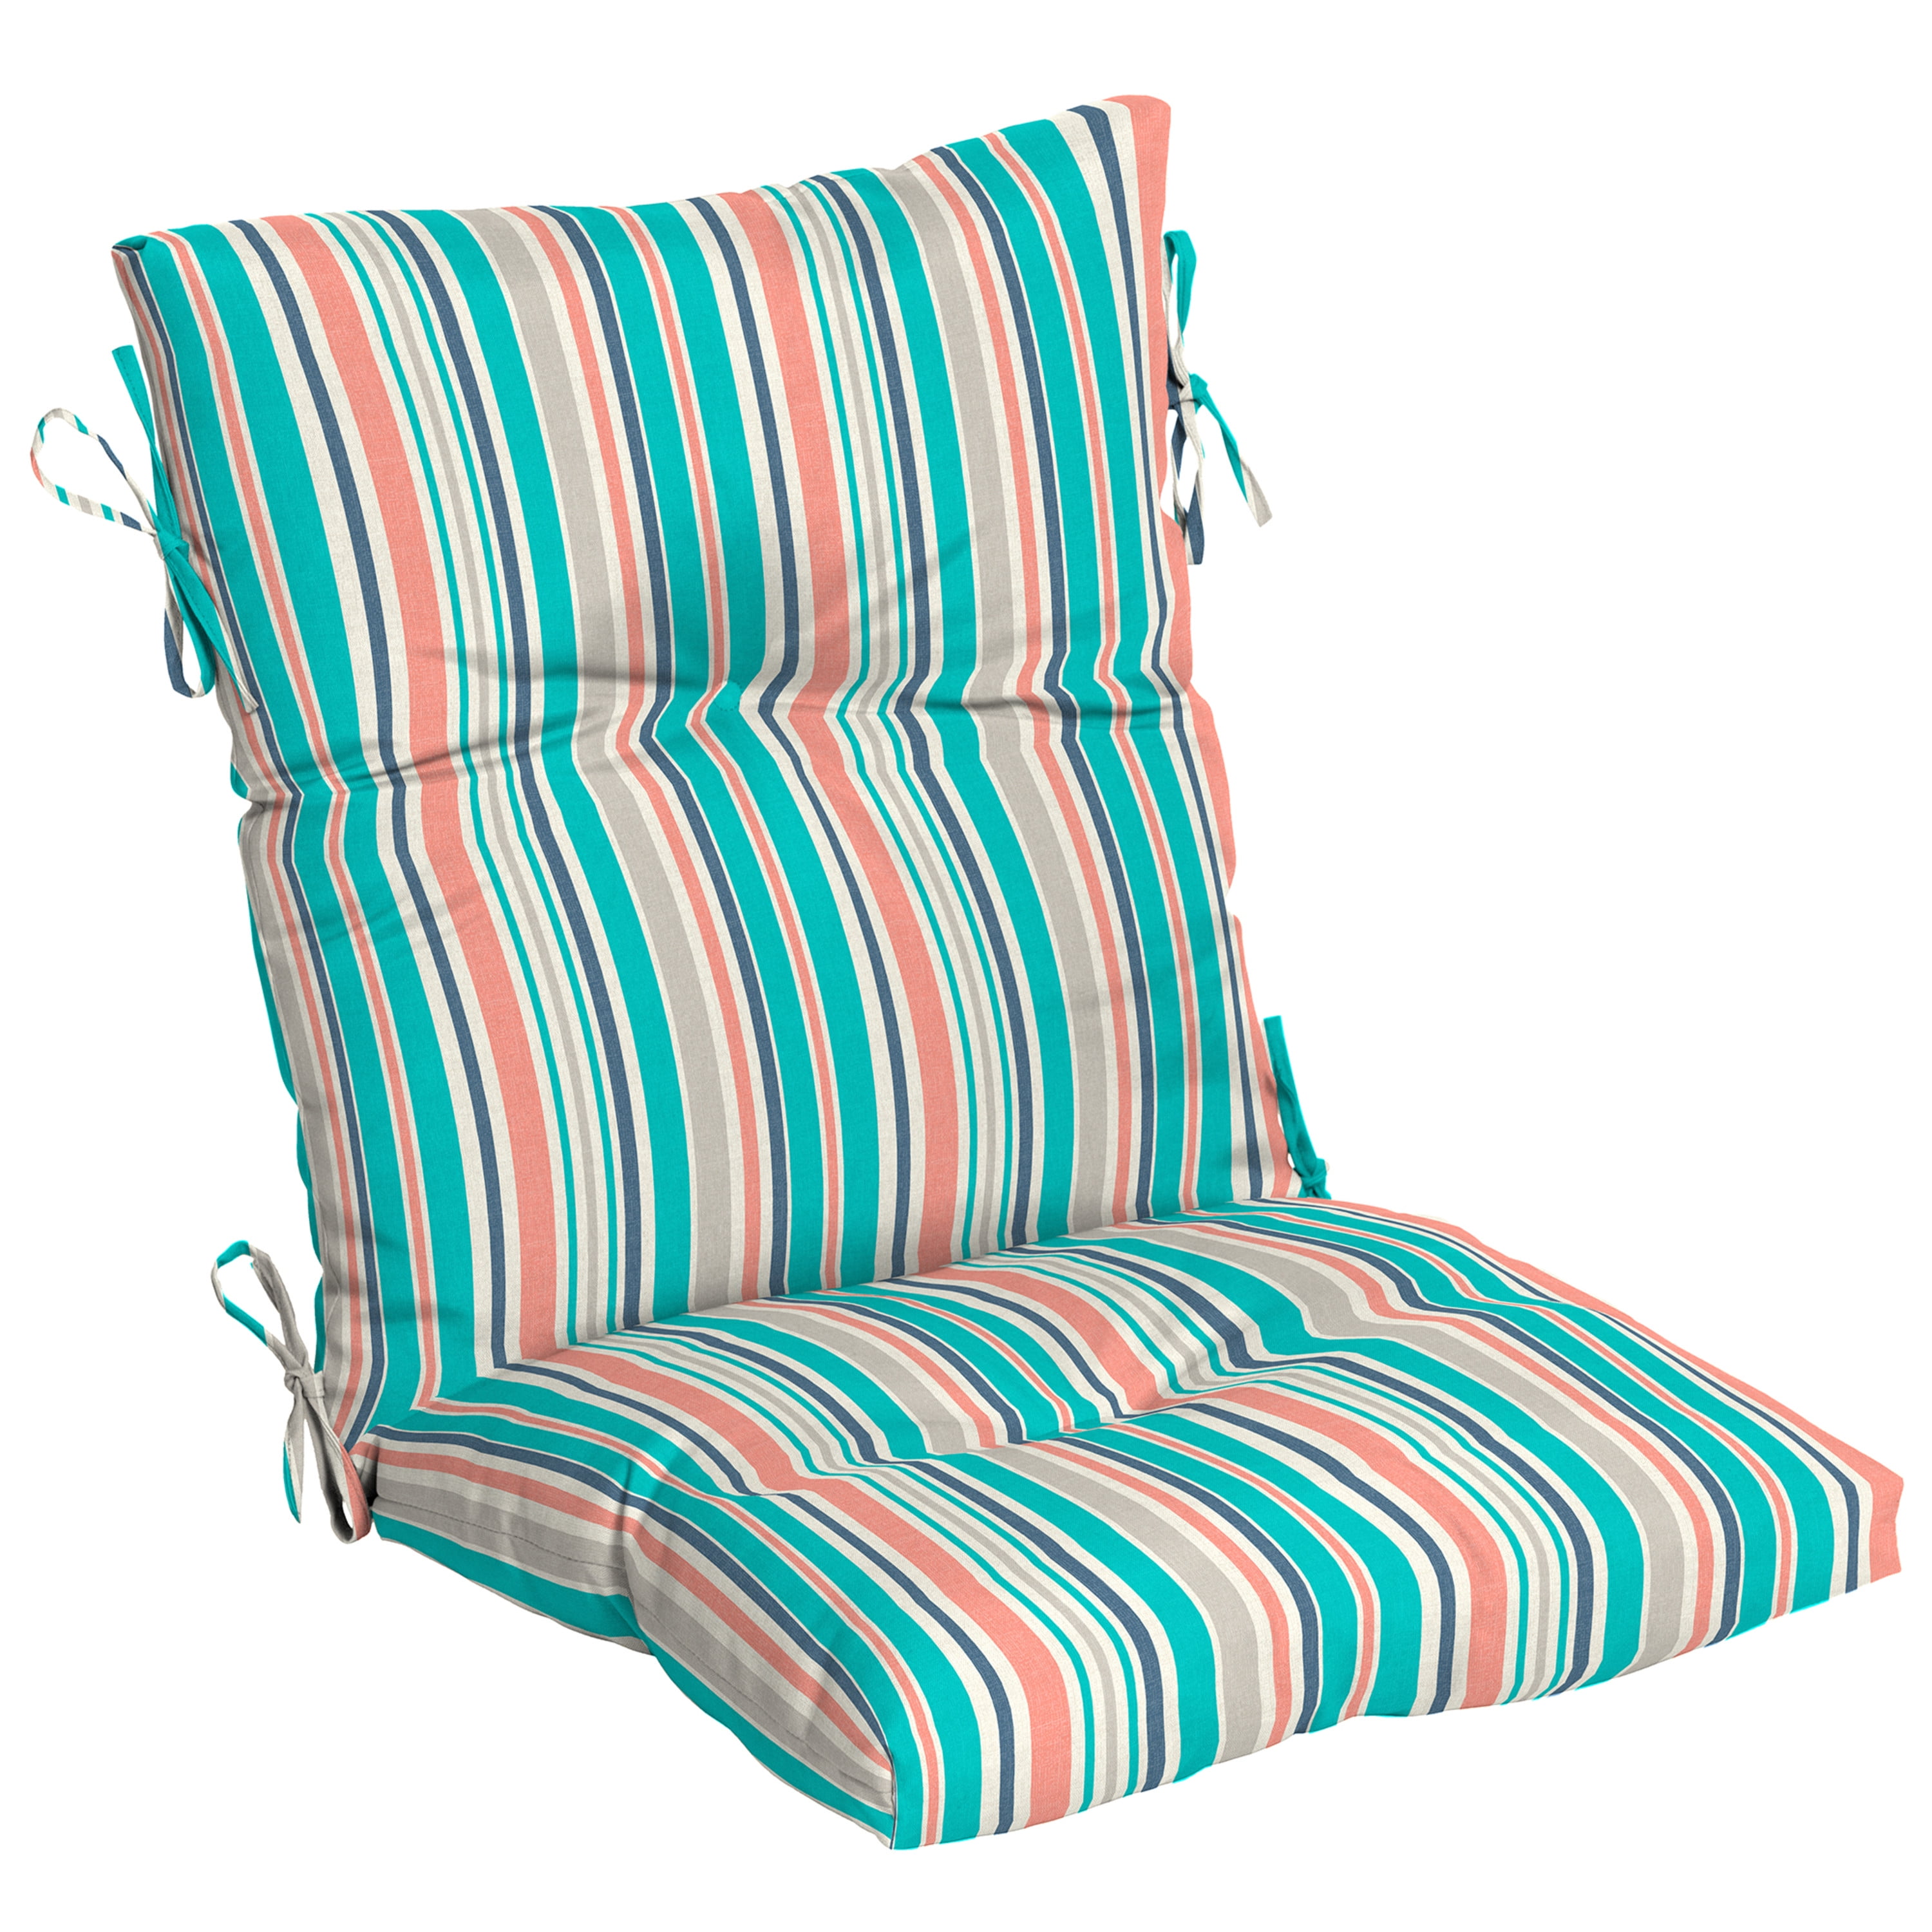 Kensington Garden 24x22 Multi-stripe Outdoor High Back Chair